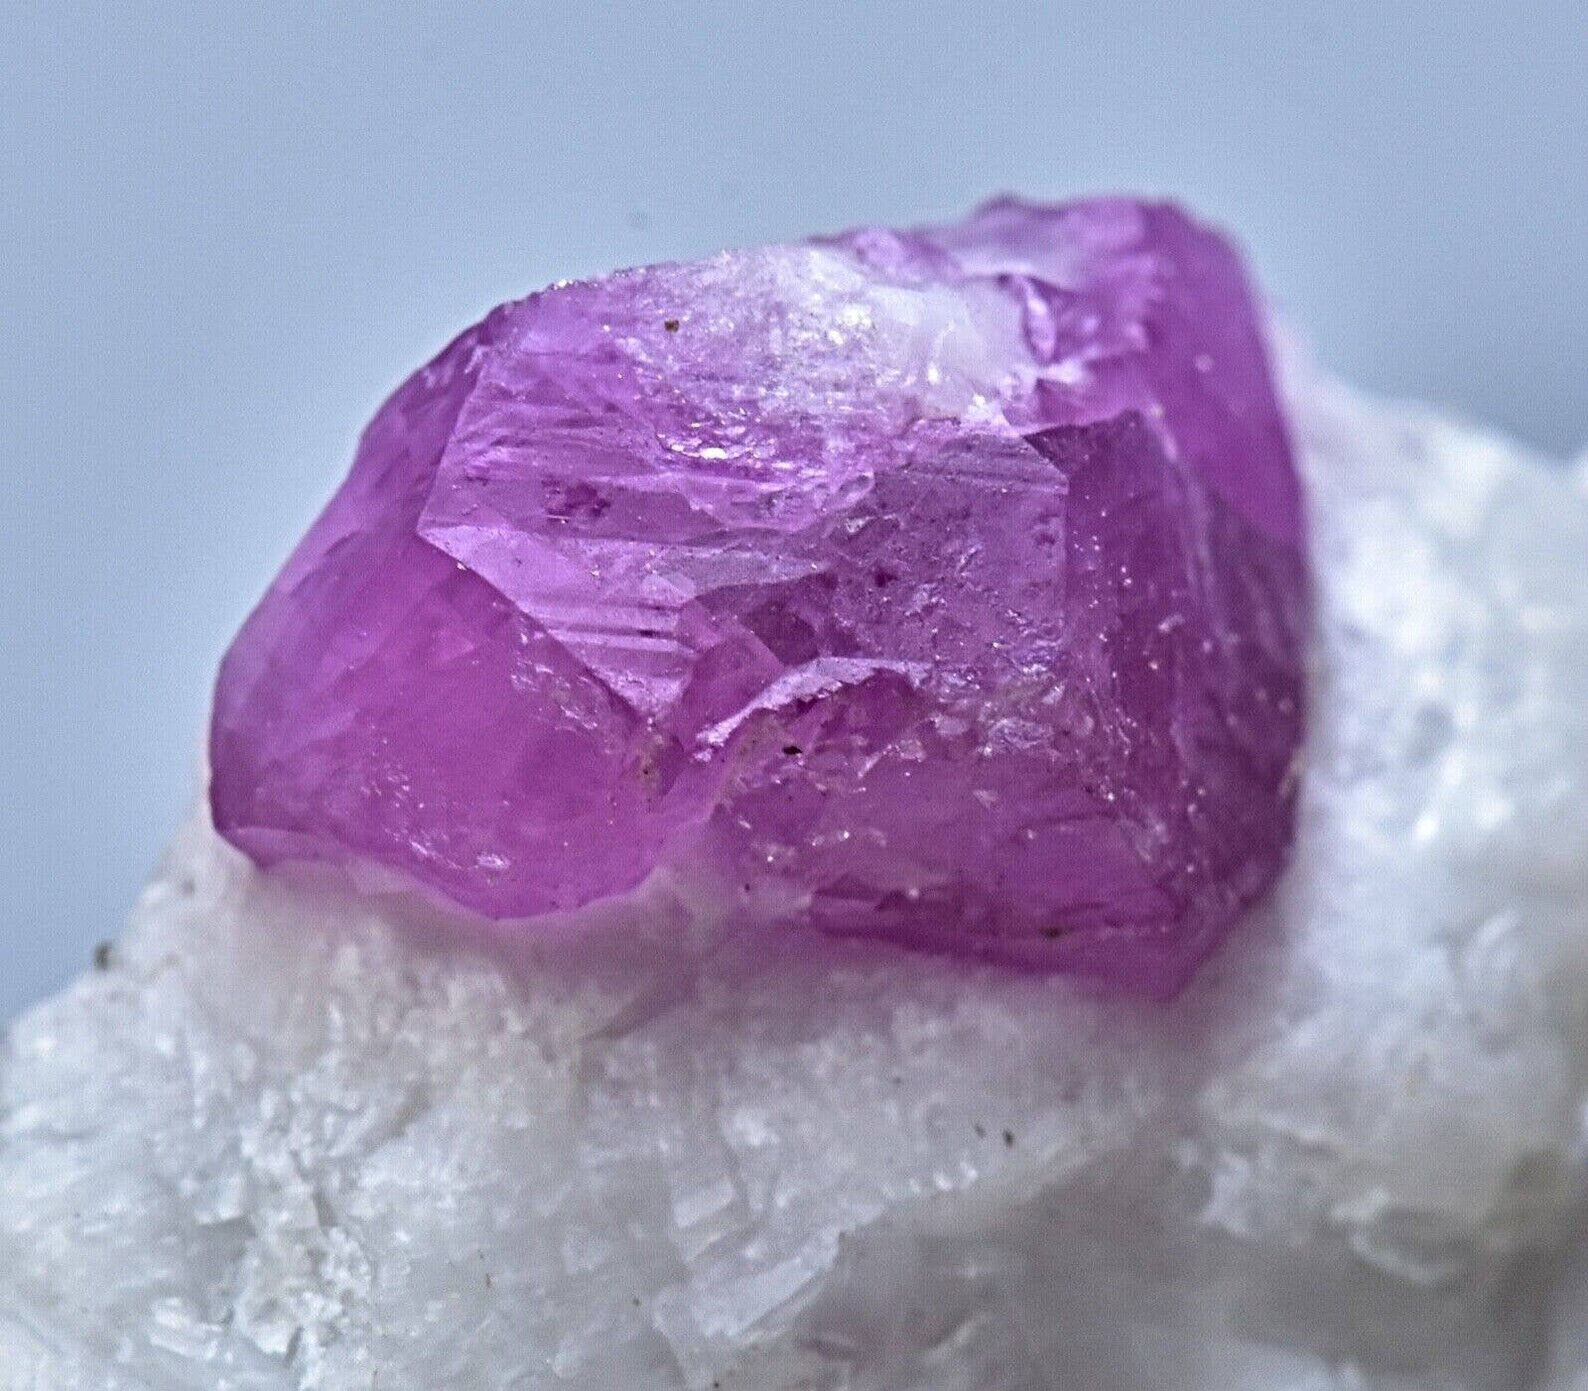 43 Gram Natural Terminated Ruby Crystal Specimen From Jigdalik Afghanistan